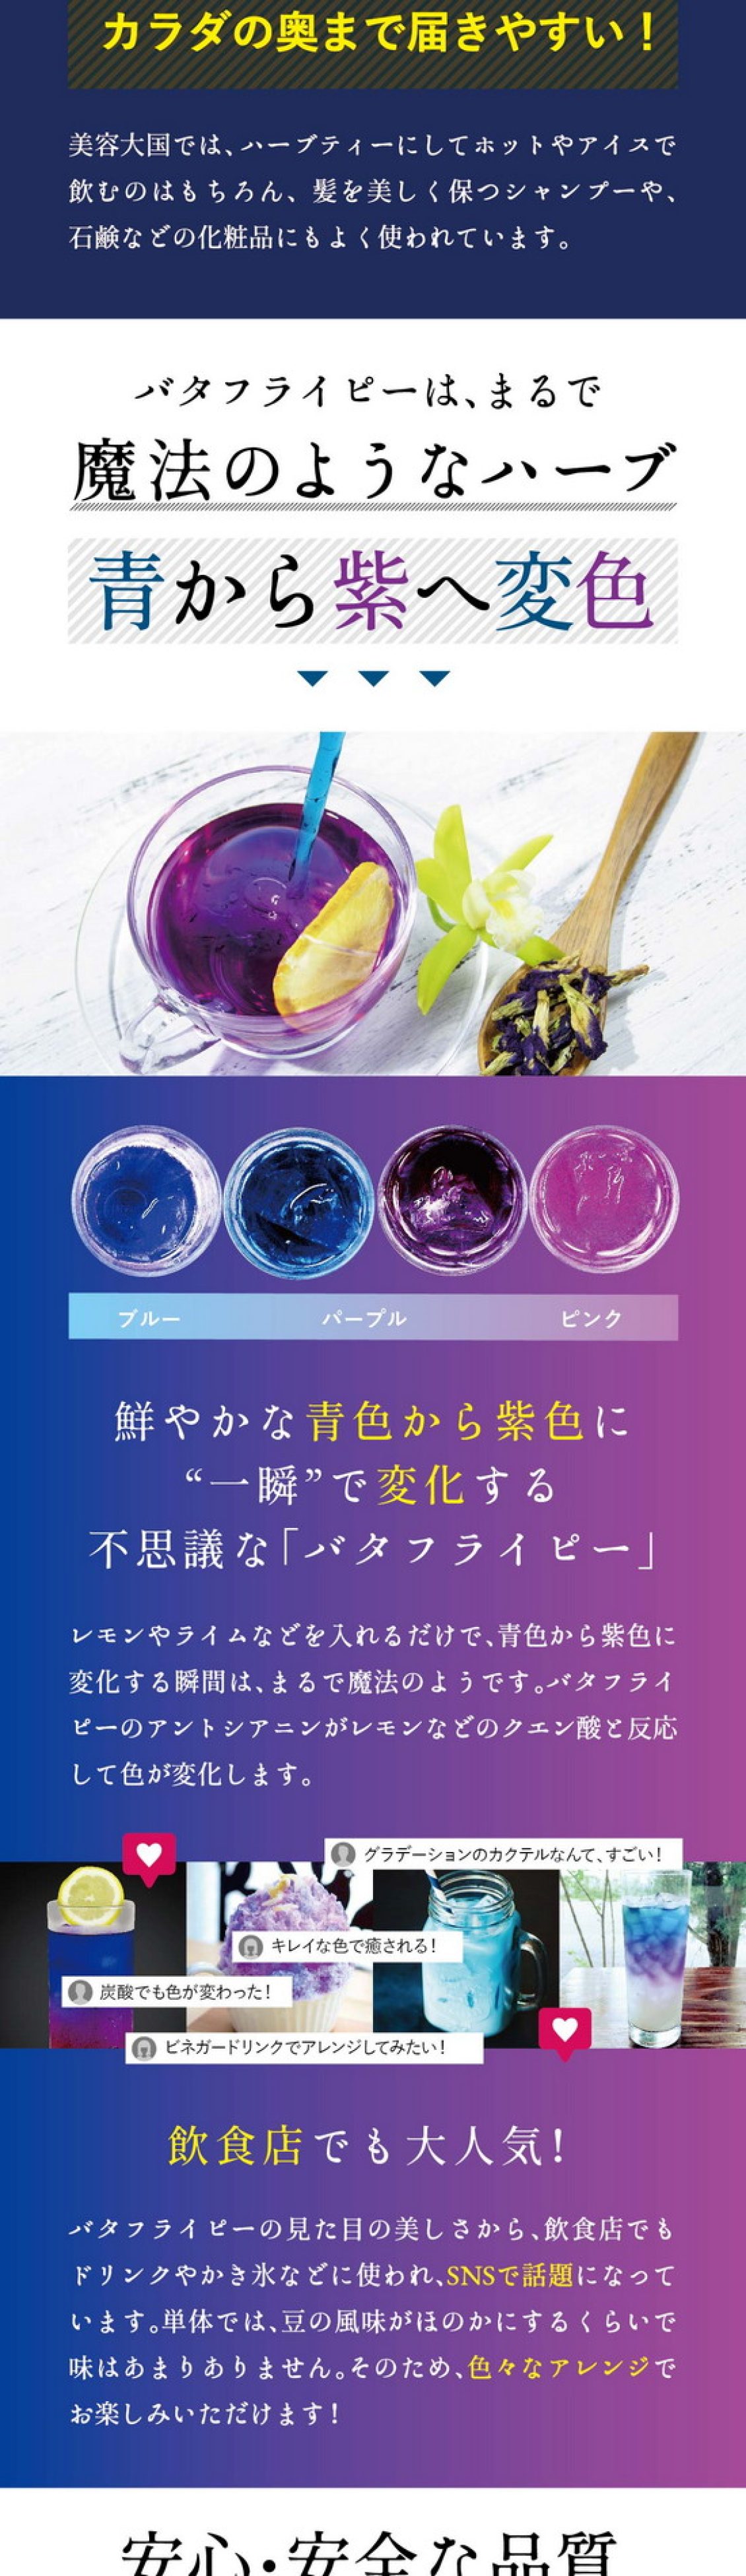 バタフライピーはまるで魔法のようなハーブ。青から紫へ変色。鮮やかな青色から紫色に一瞬で変化する不思議なバタフライピー。レモンやライムなどを入れるだけで青色から紫色に変化する瞬間はまるで魔法のようです。バタフライピーのアントシアニンがレモンなどのクエン酸と反応して色が変化します。グラデーションのカクテルなんてすごい！綺麗な色で癒される！炭酸でも色が変わった！ビネガードリンクでアレンジしてみたい！飲食店でも大人気！バタフライピーの見た目の美しさから飲食店でもドリンクやかき氷などに使われSNSで話題になっています。単体では豆の風味がほのかにするくらいで味はあまりありません。そのため、色々なアレンジでお楽しみいただけます。